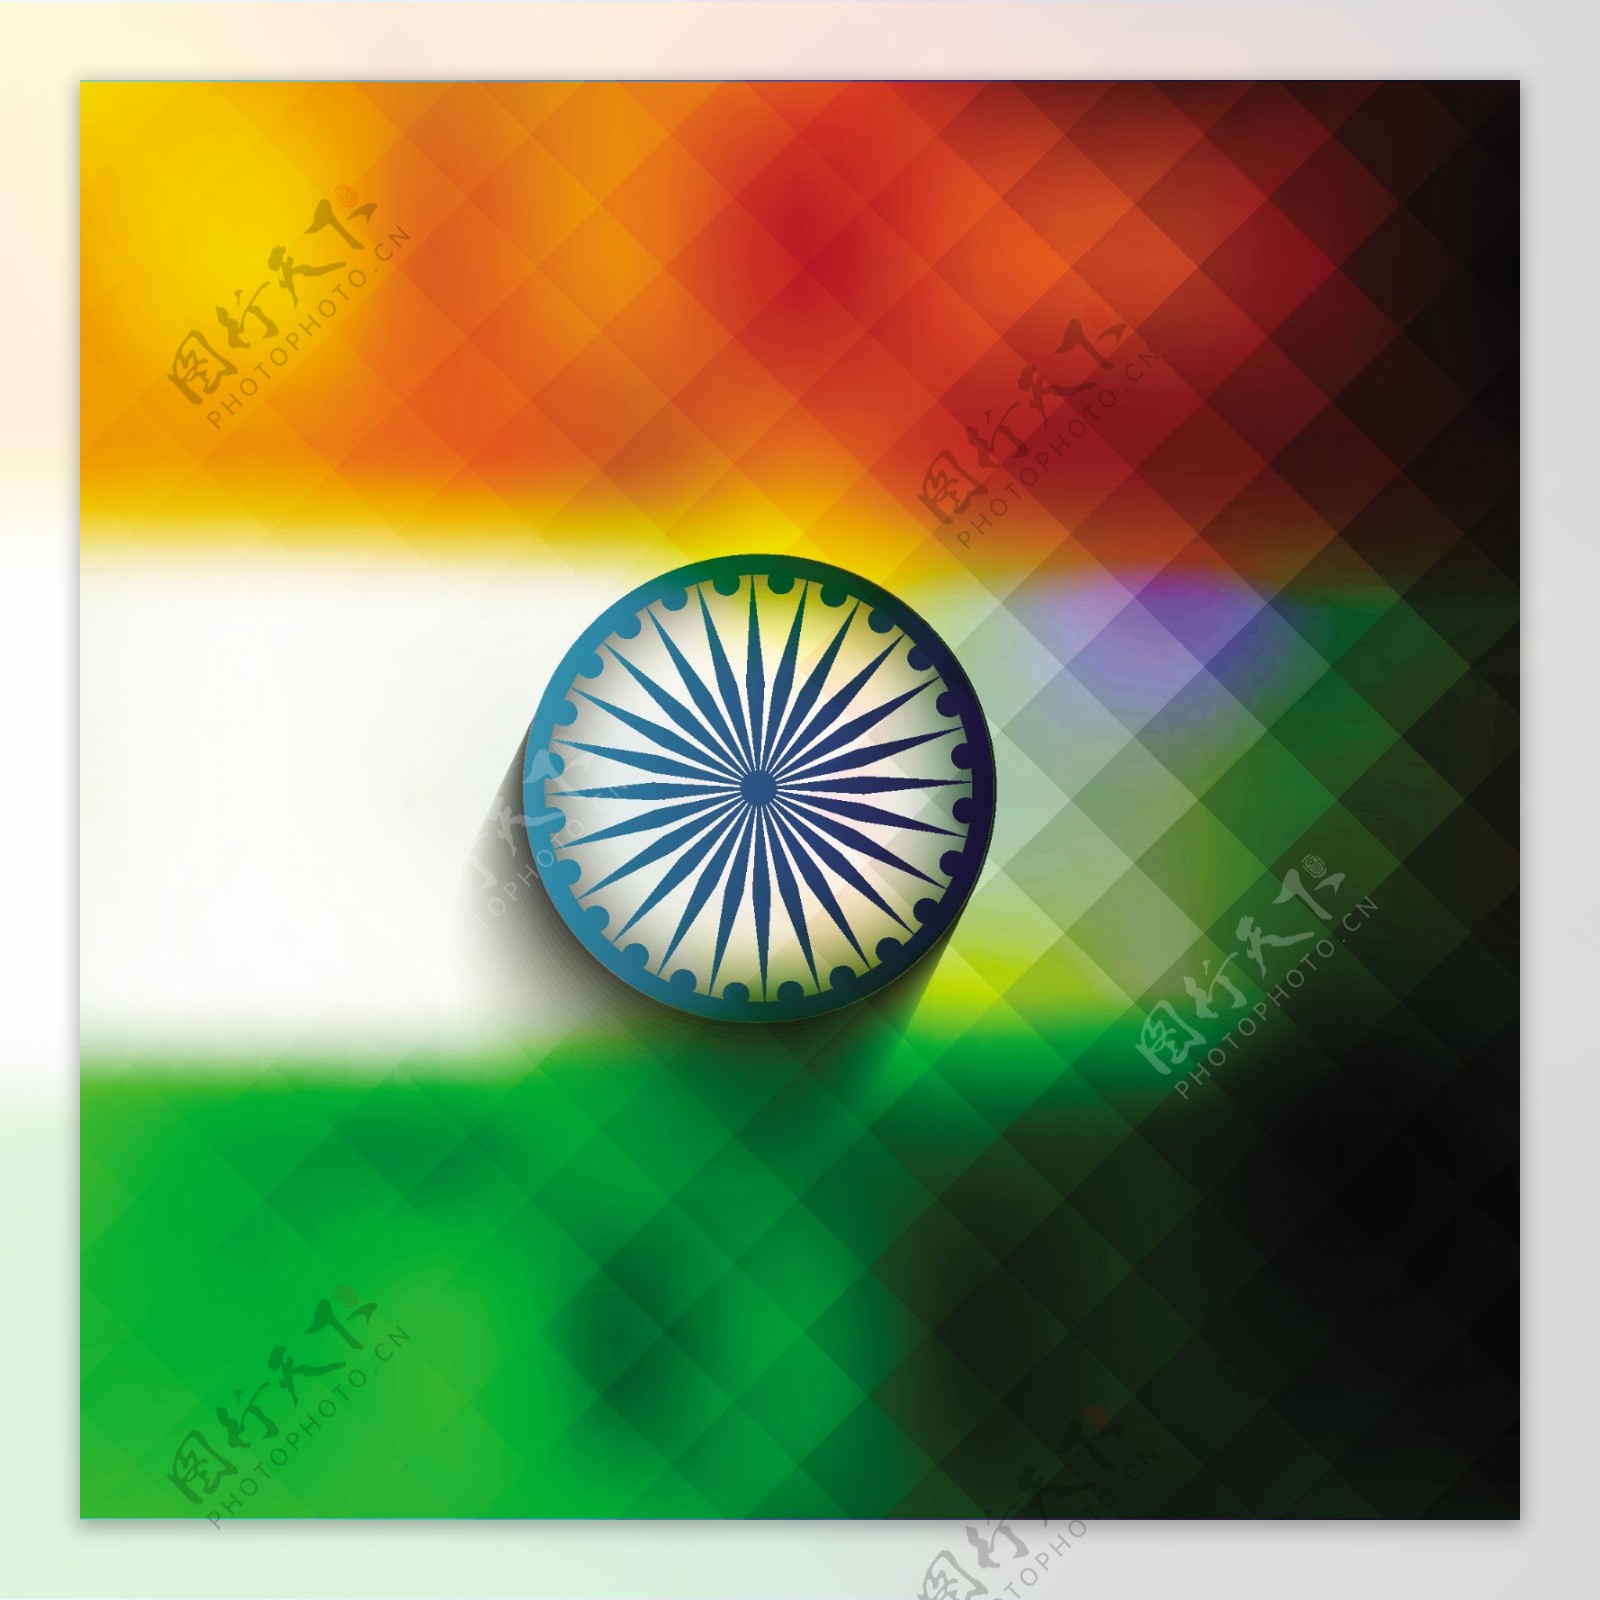 马赛克图案印度国旗